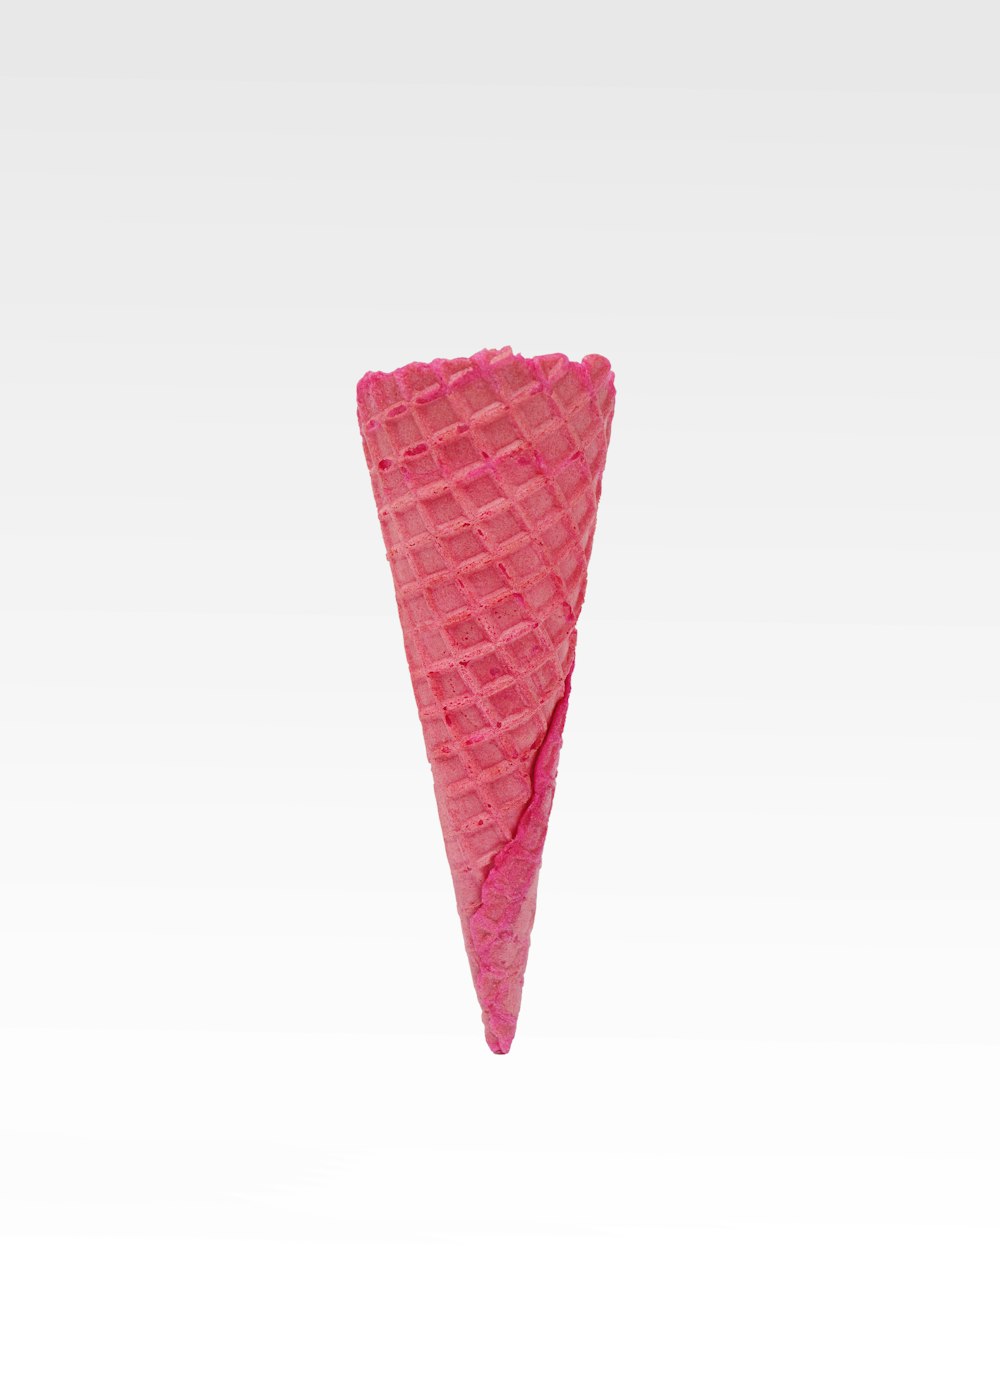 흰색 바탕에 핑크 콘 아이스크림